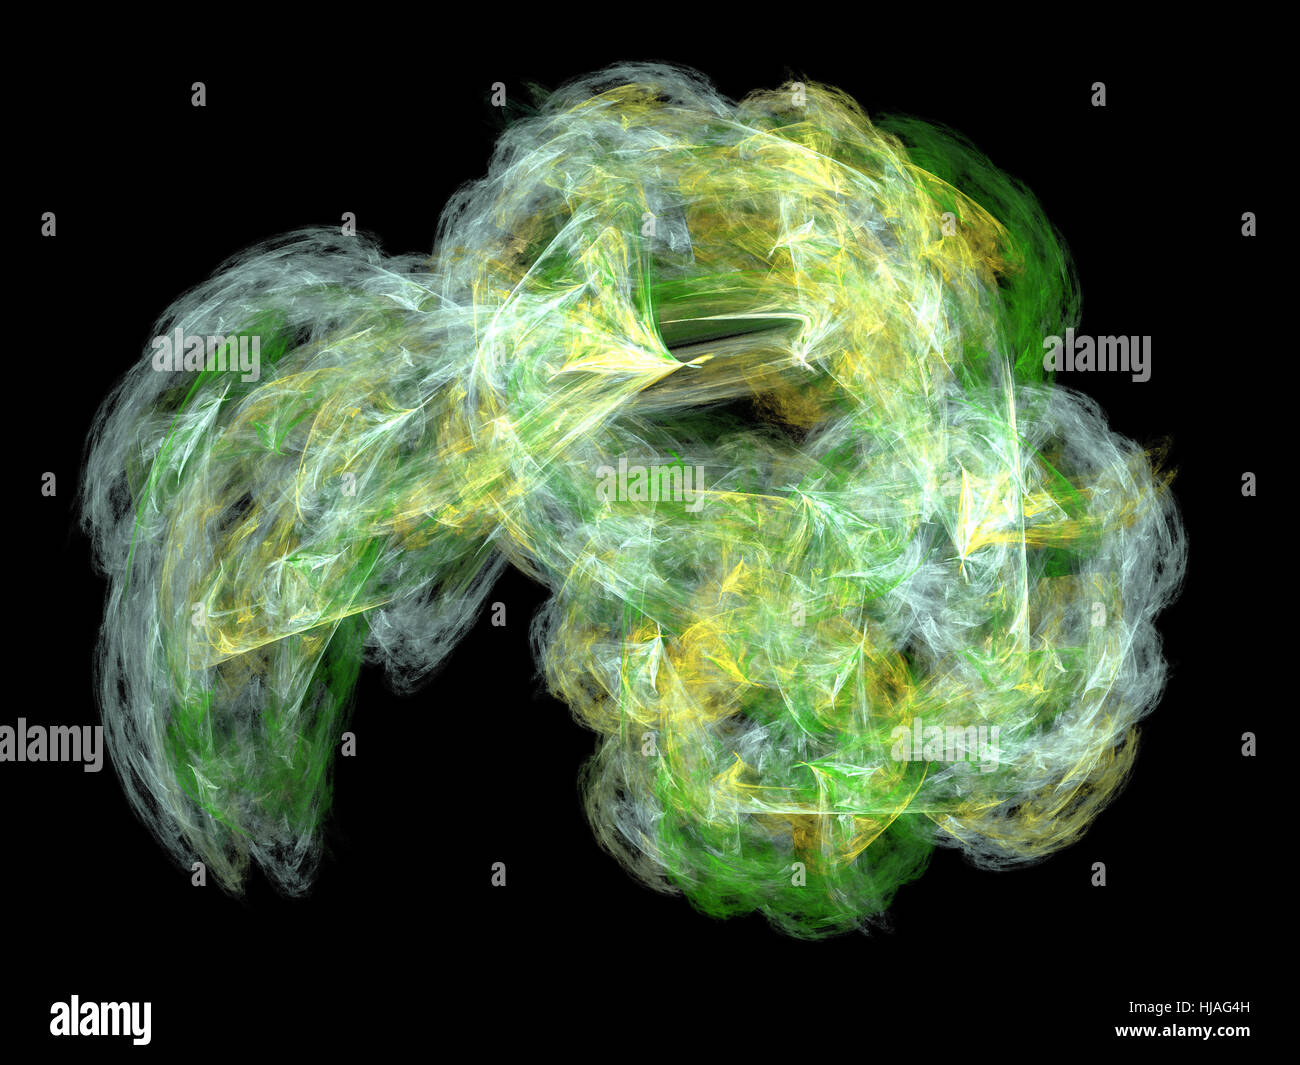 Image d'un fractal numérique sur la couleur noire Banque D'Images